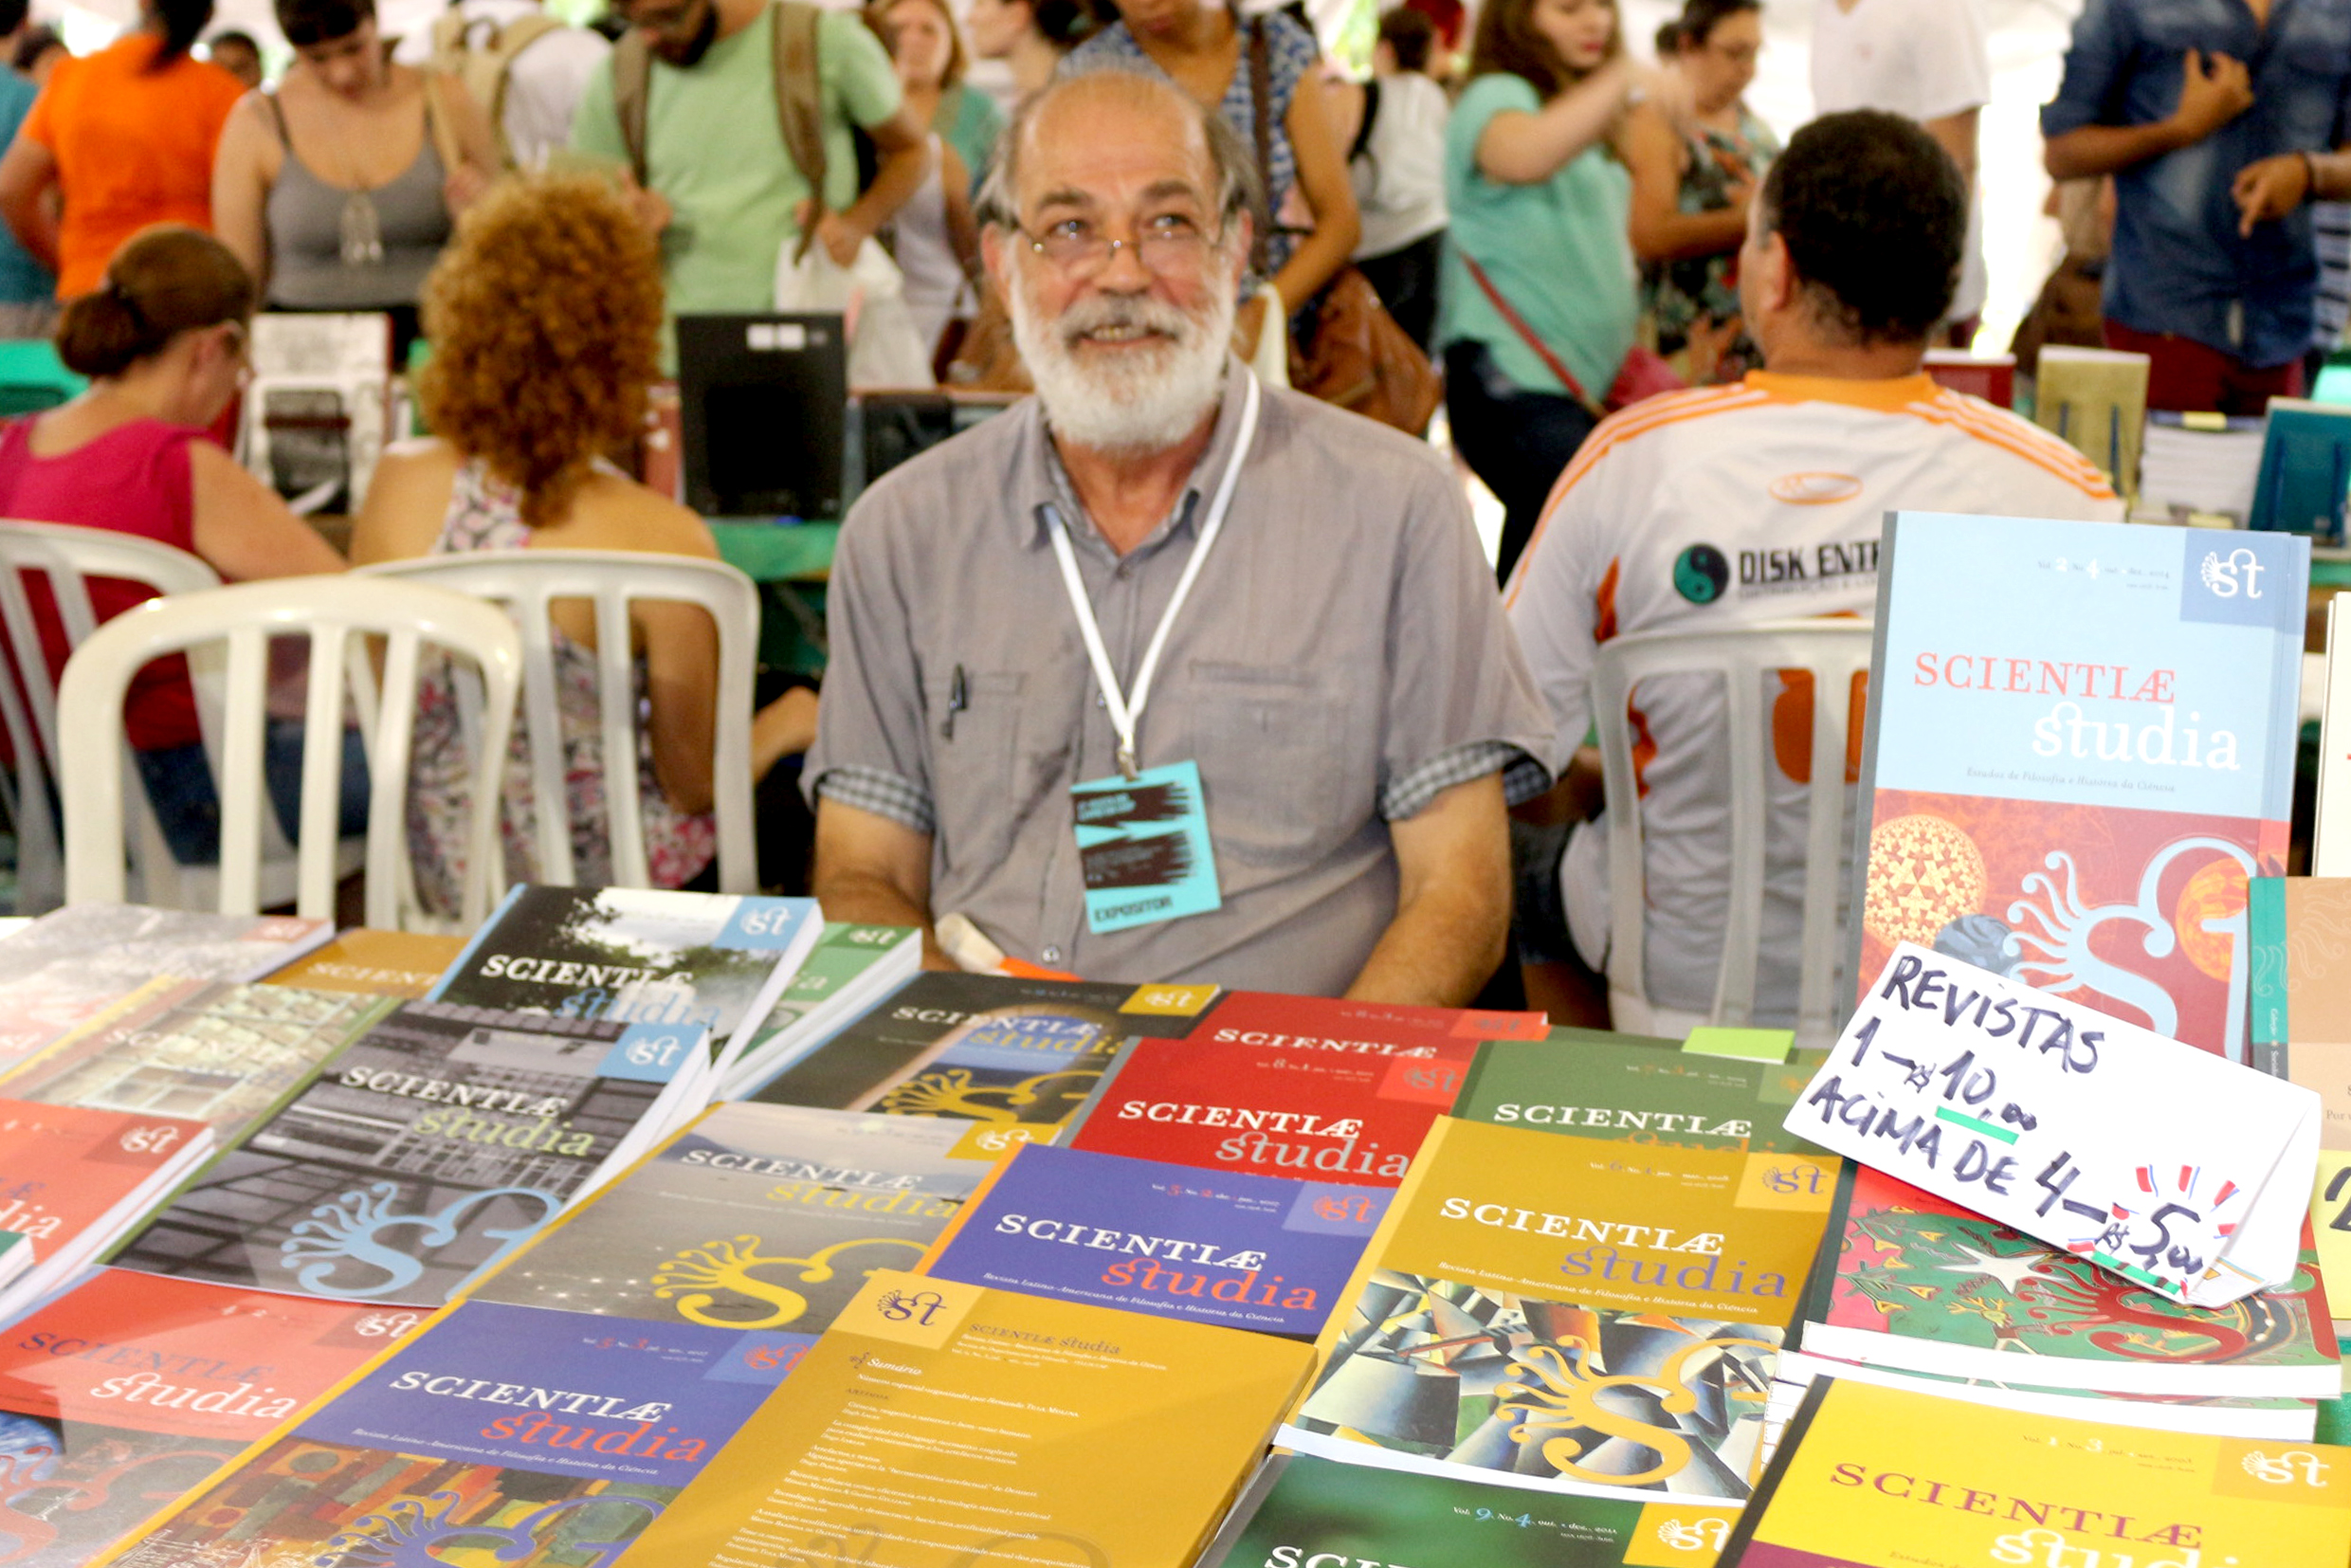 Pablo Mariconda no stand da Revista Scientiae Studia na 17a. Feira do Livro da USP 2015 